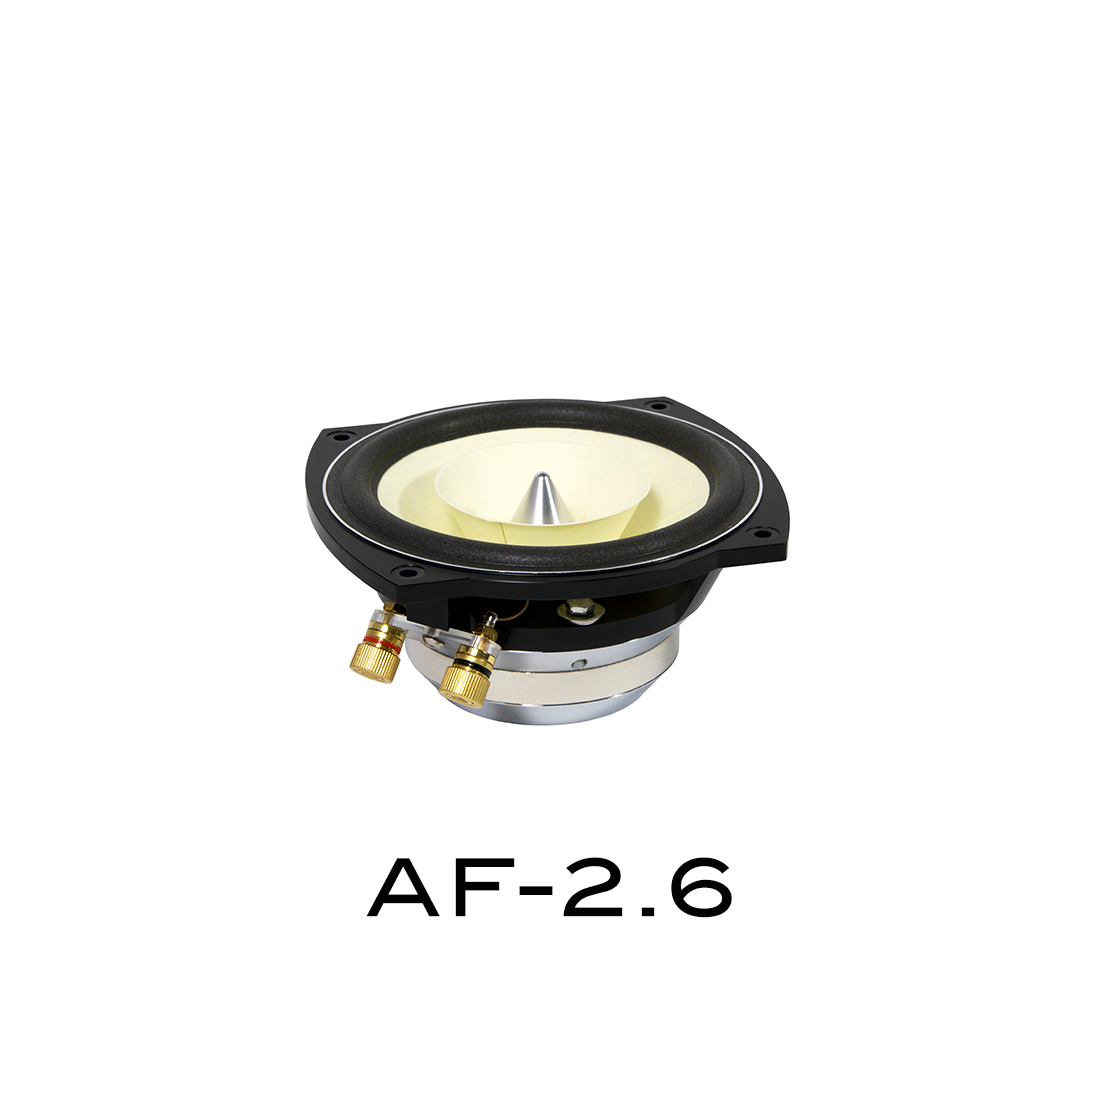 AF-2.6 (Kopie)